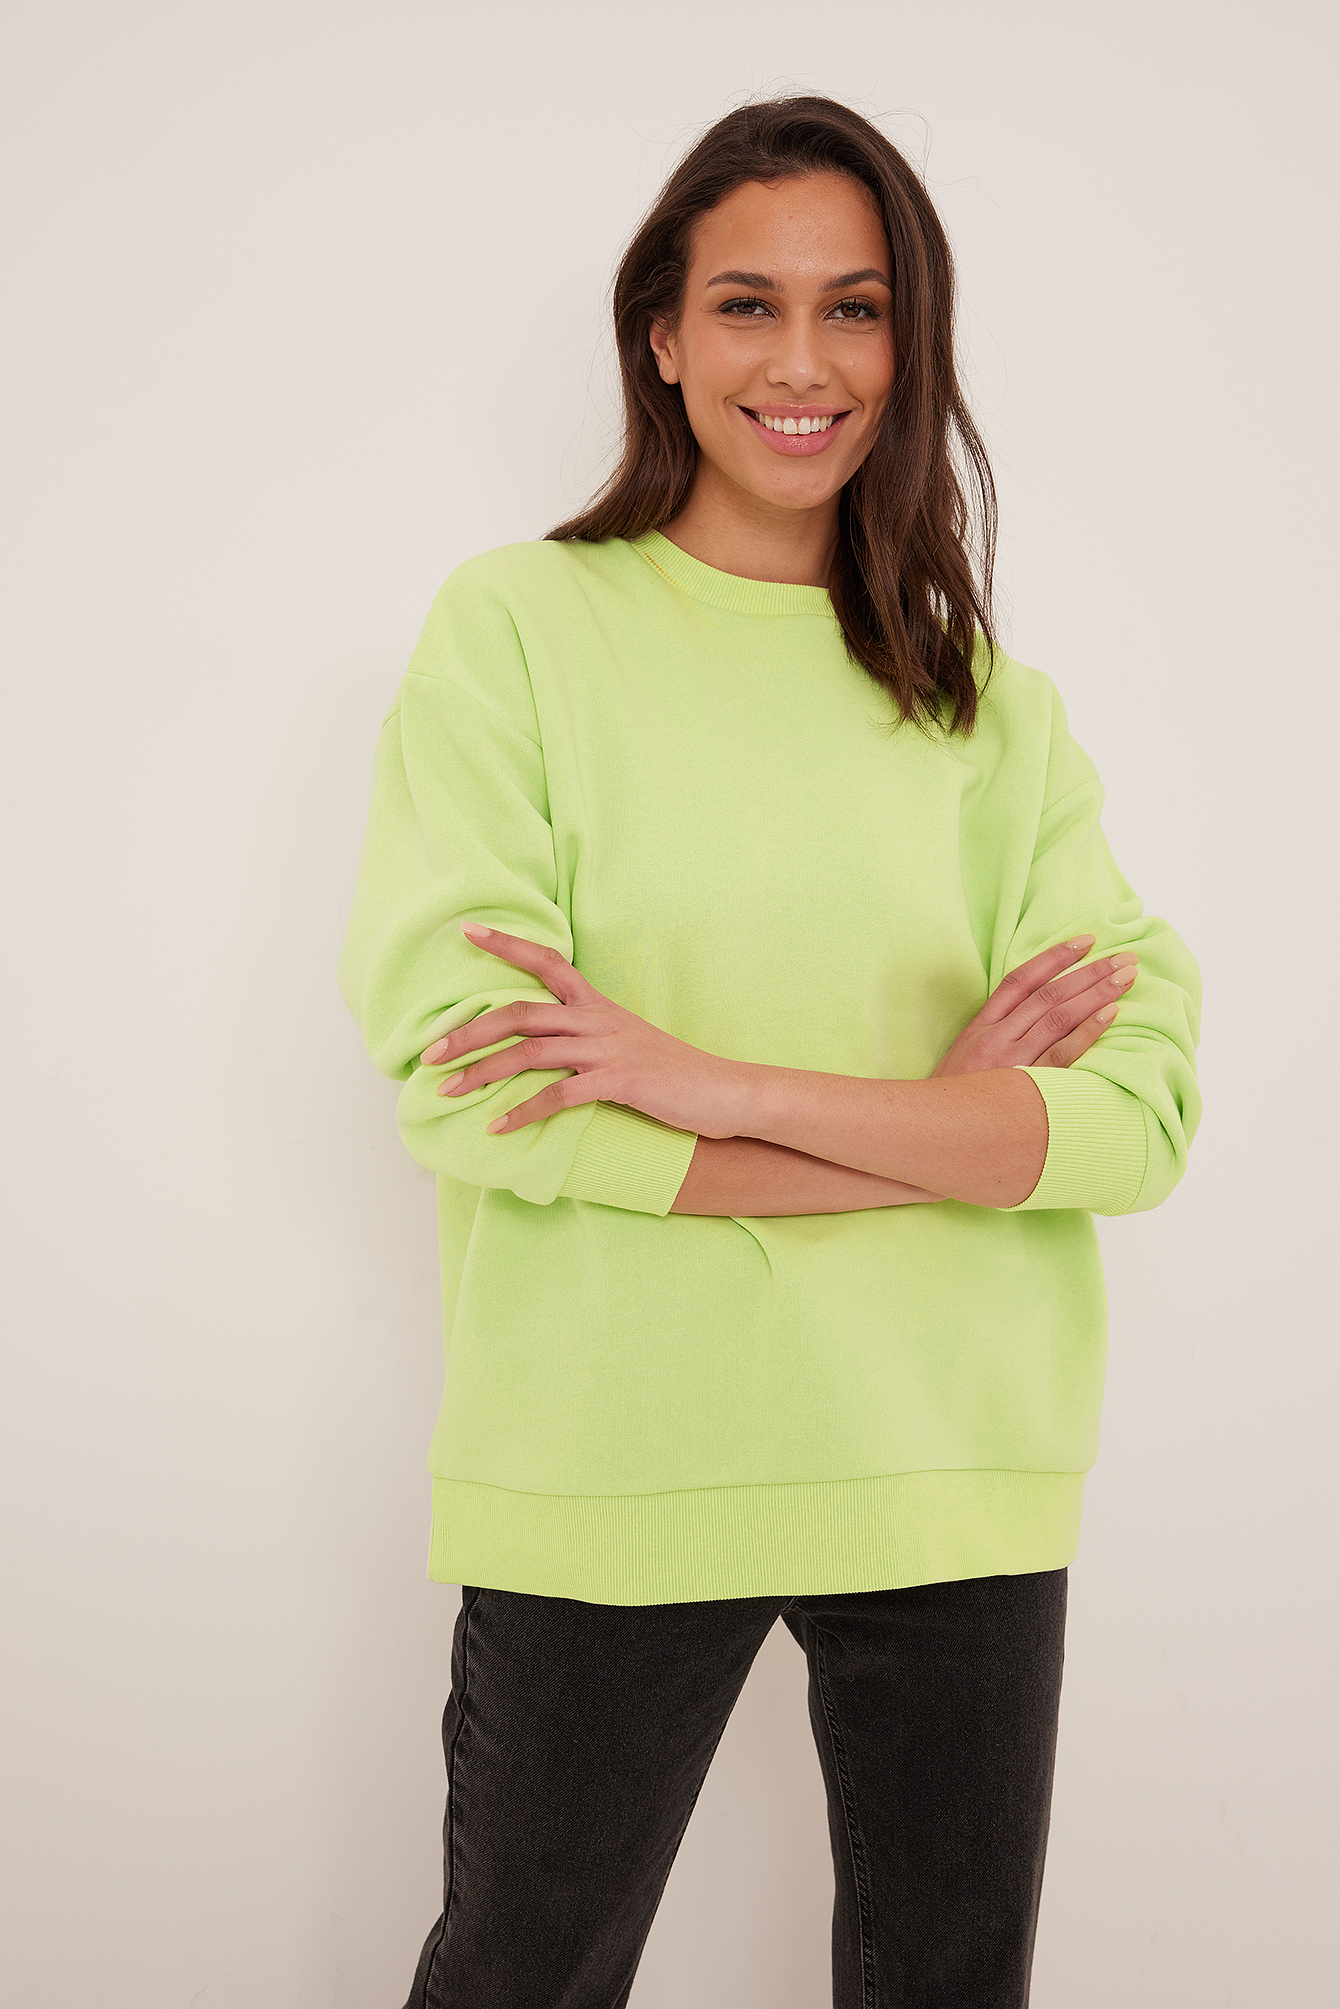 und Fitnesskleidung Sweatshirts Damen Bekleidung Sport- NA-KD Synthetik Trend Organischer Pullover mit Waffelmuster und Reißverschlussdetail in Grün Training 